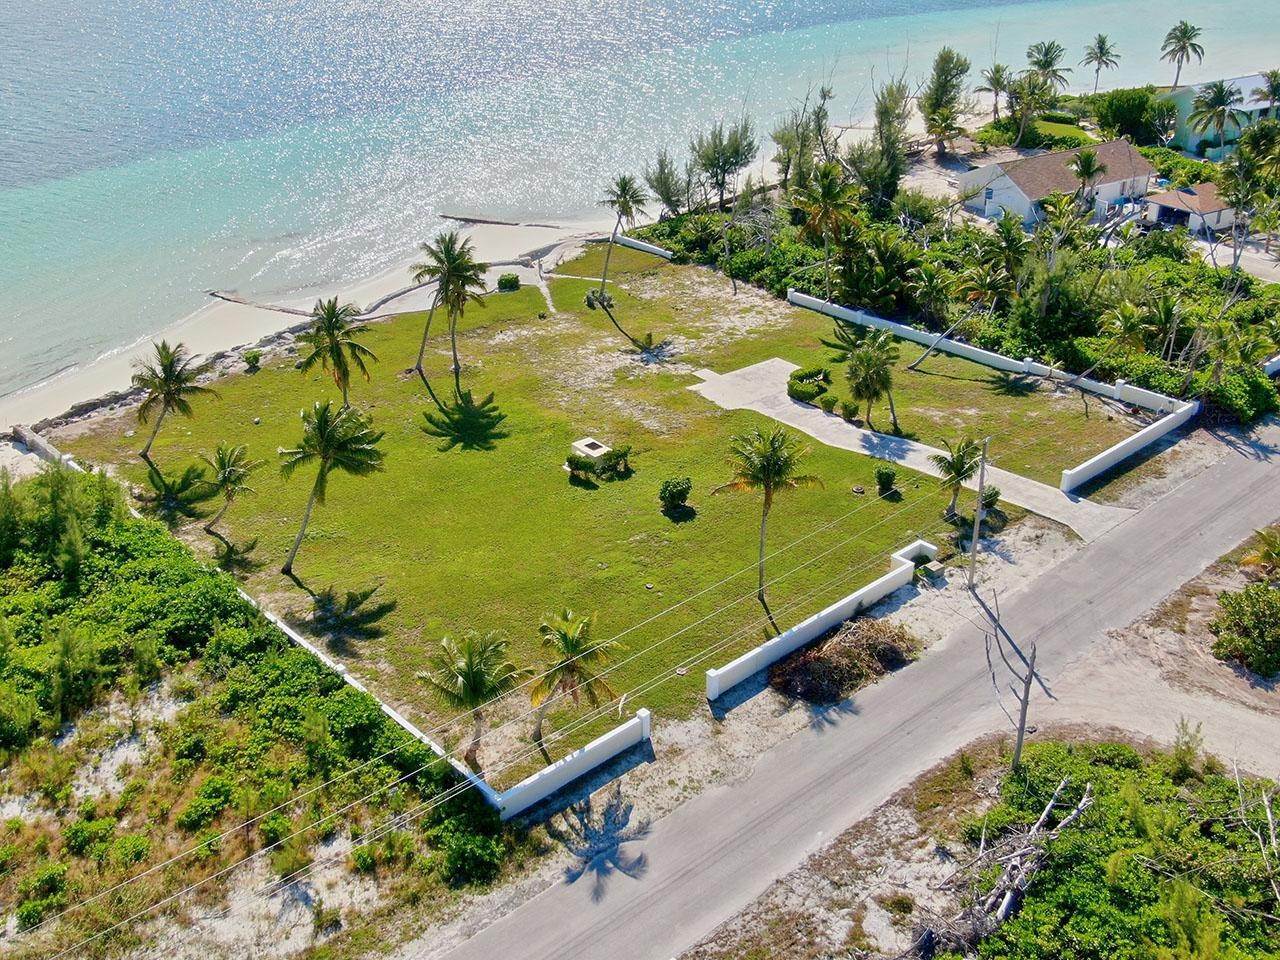 9. Lots / Acreage for Sale at Windward Beach, Treasure Cay, Abaco, Bahamas